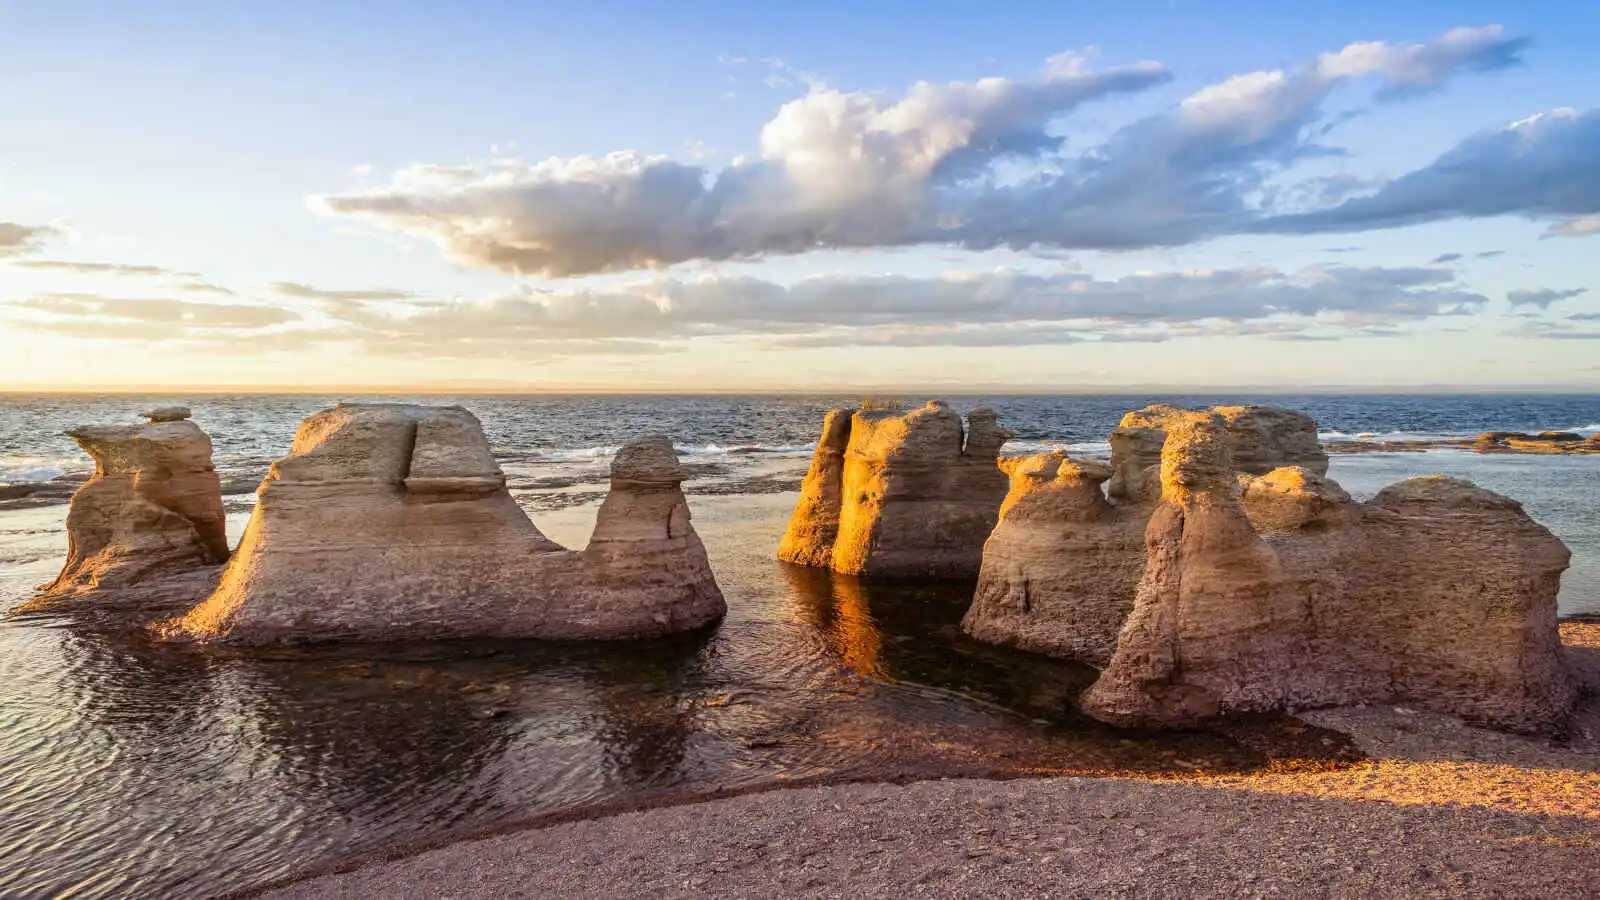 Monolithes de l'île Nue de Mingan, près de Havre-Saint-Pierre, Québec, Canada